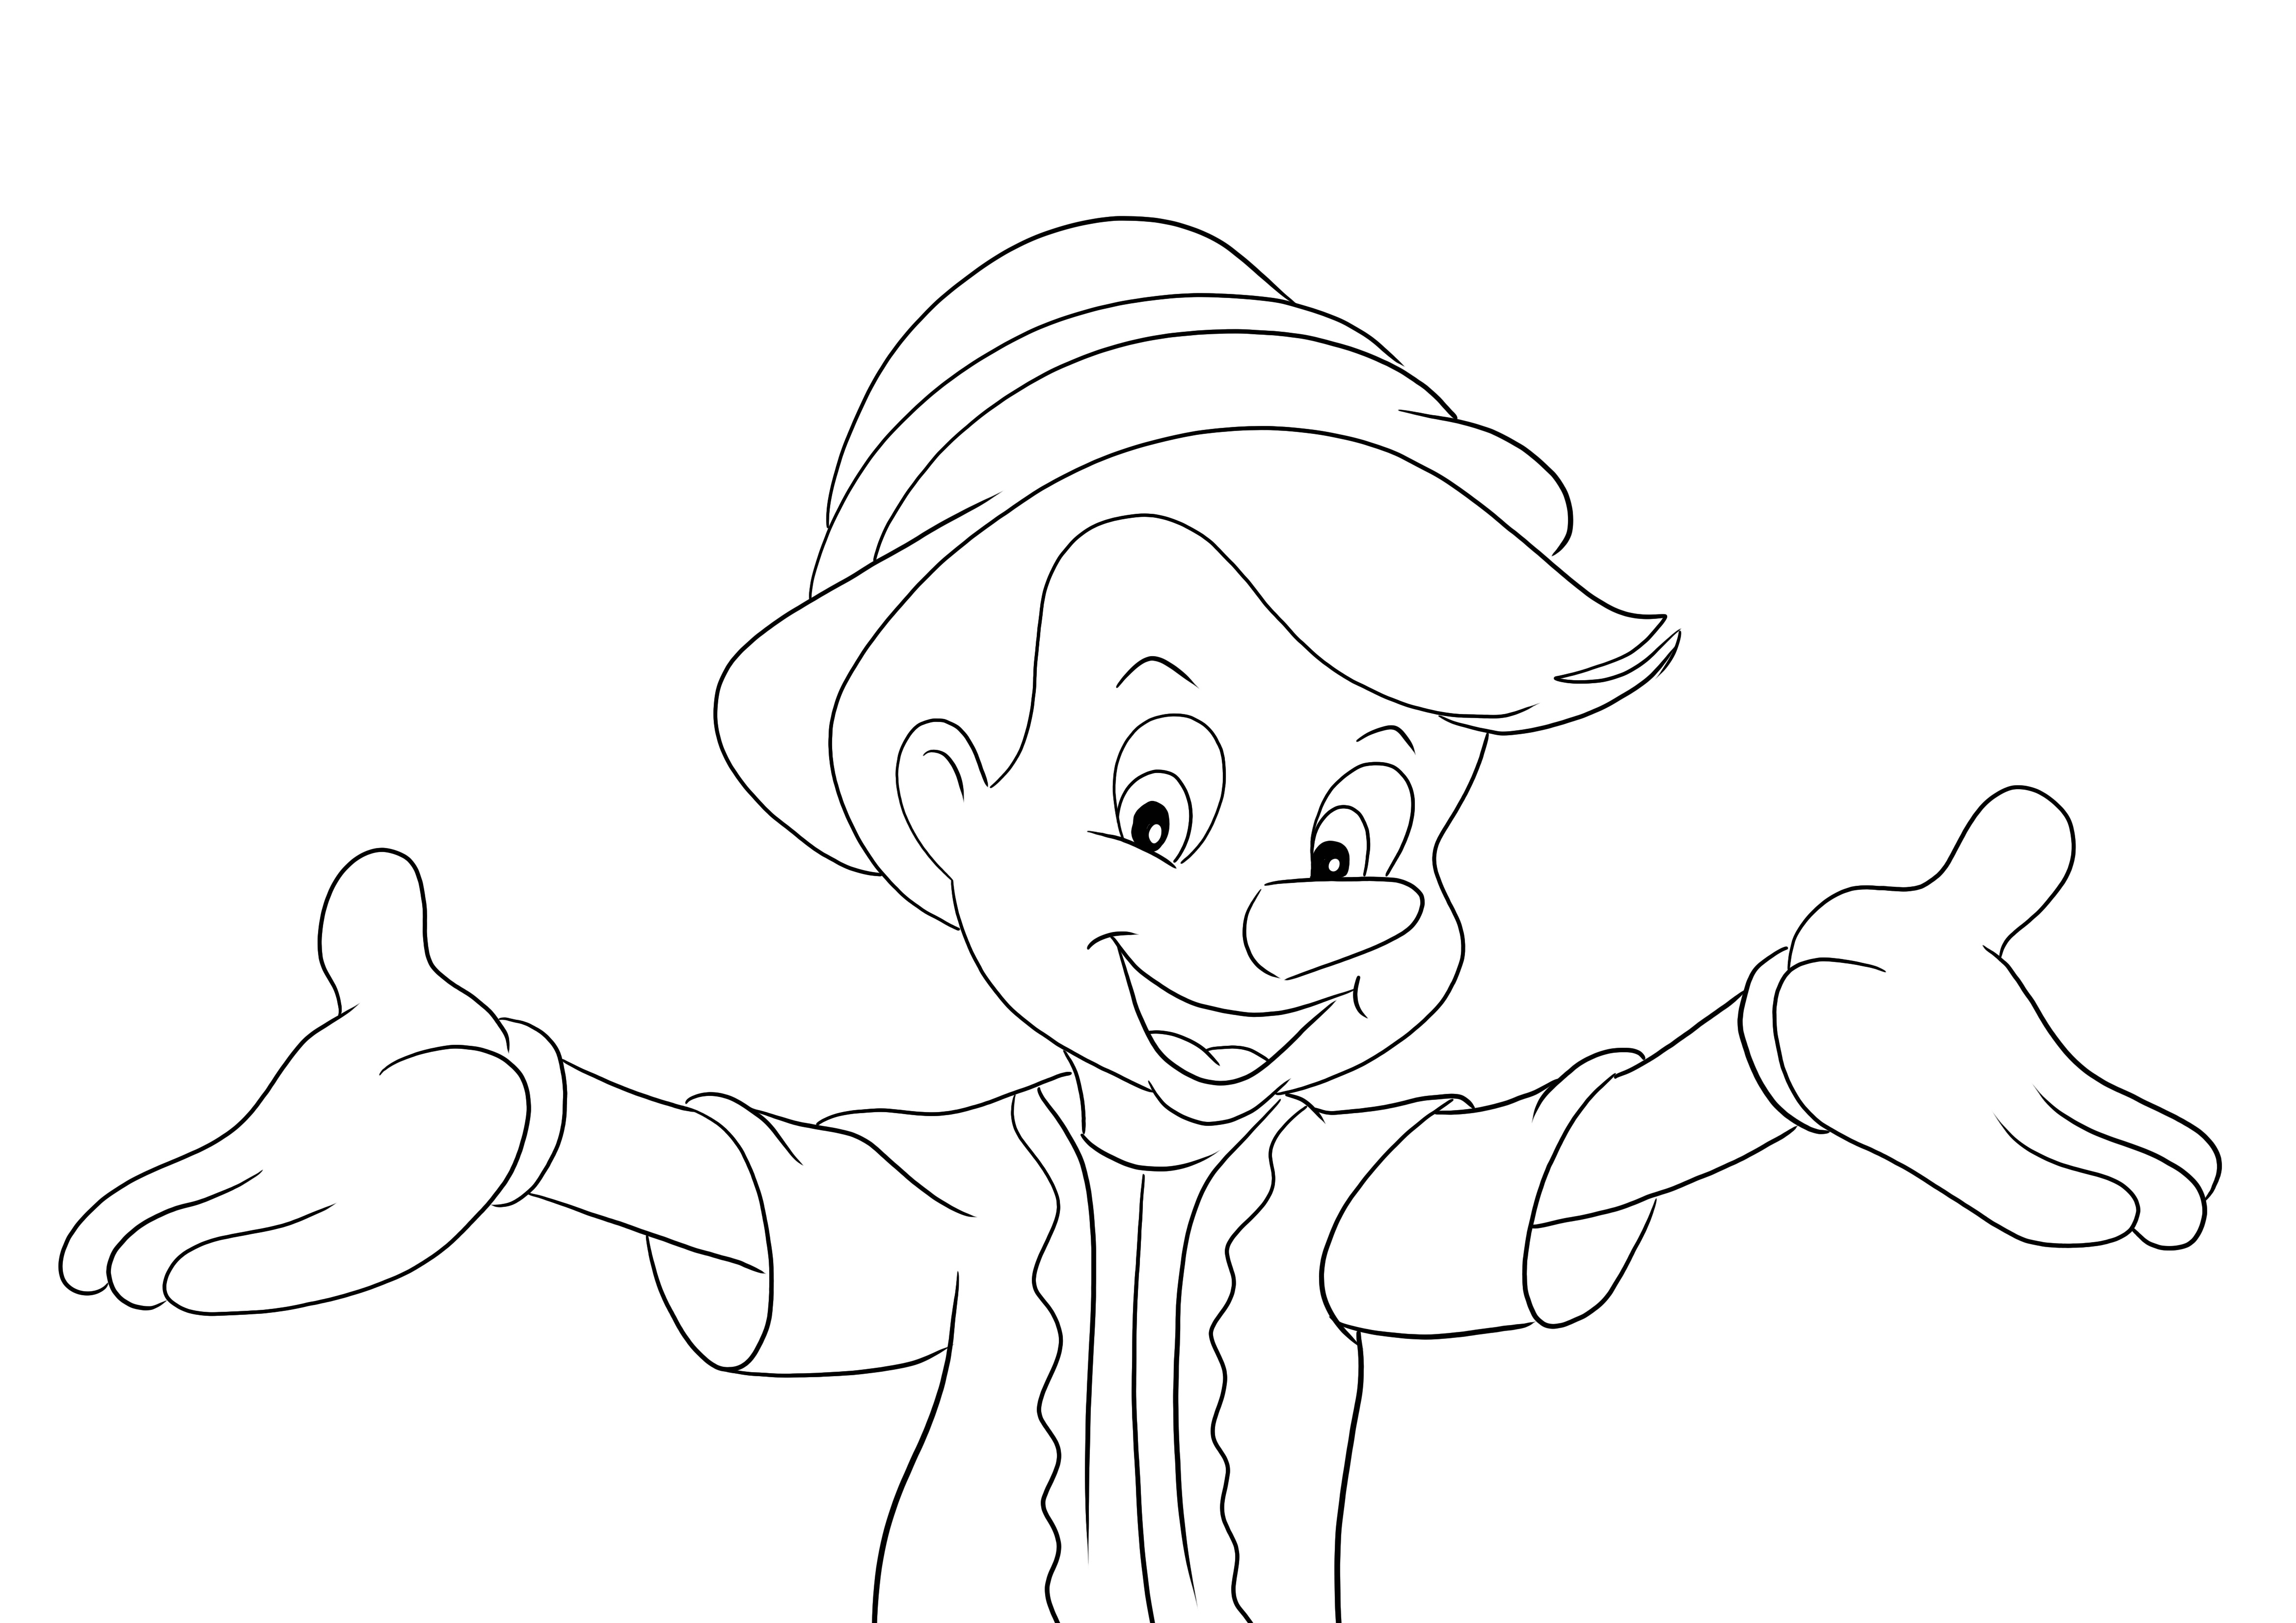 Pinokio i otwórz zestaw głośnomówiący do wydrukowania i pokolorowania dla dzieci